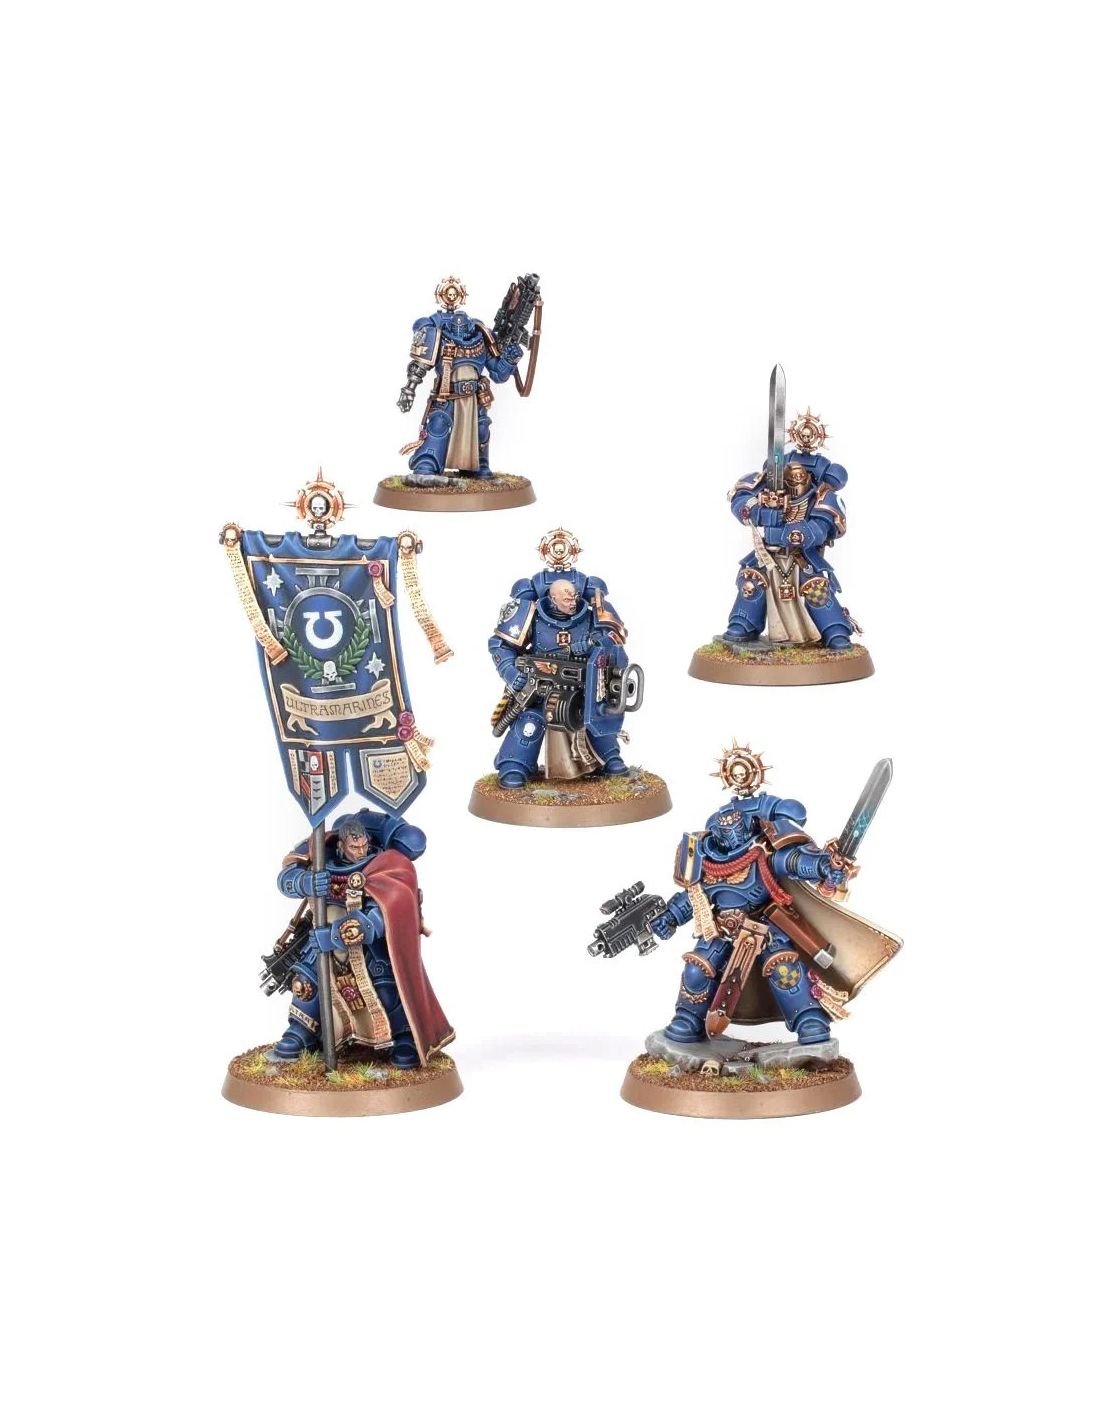 Commandes de peinture miniature pour Warhammer 40k, Age of Sigmar, Star  Wars Legion, Jeux de société ou autres figurines -  France